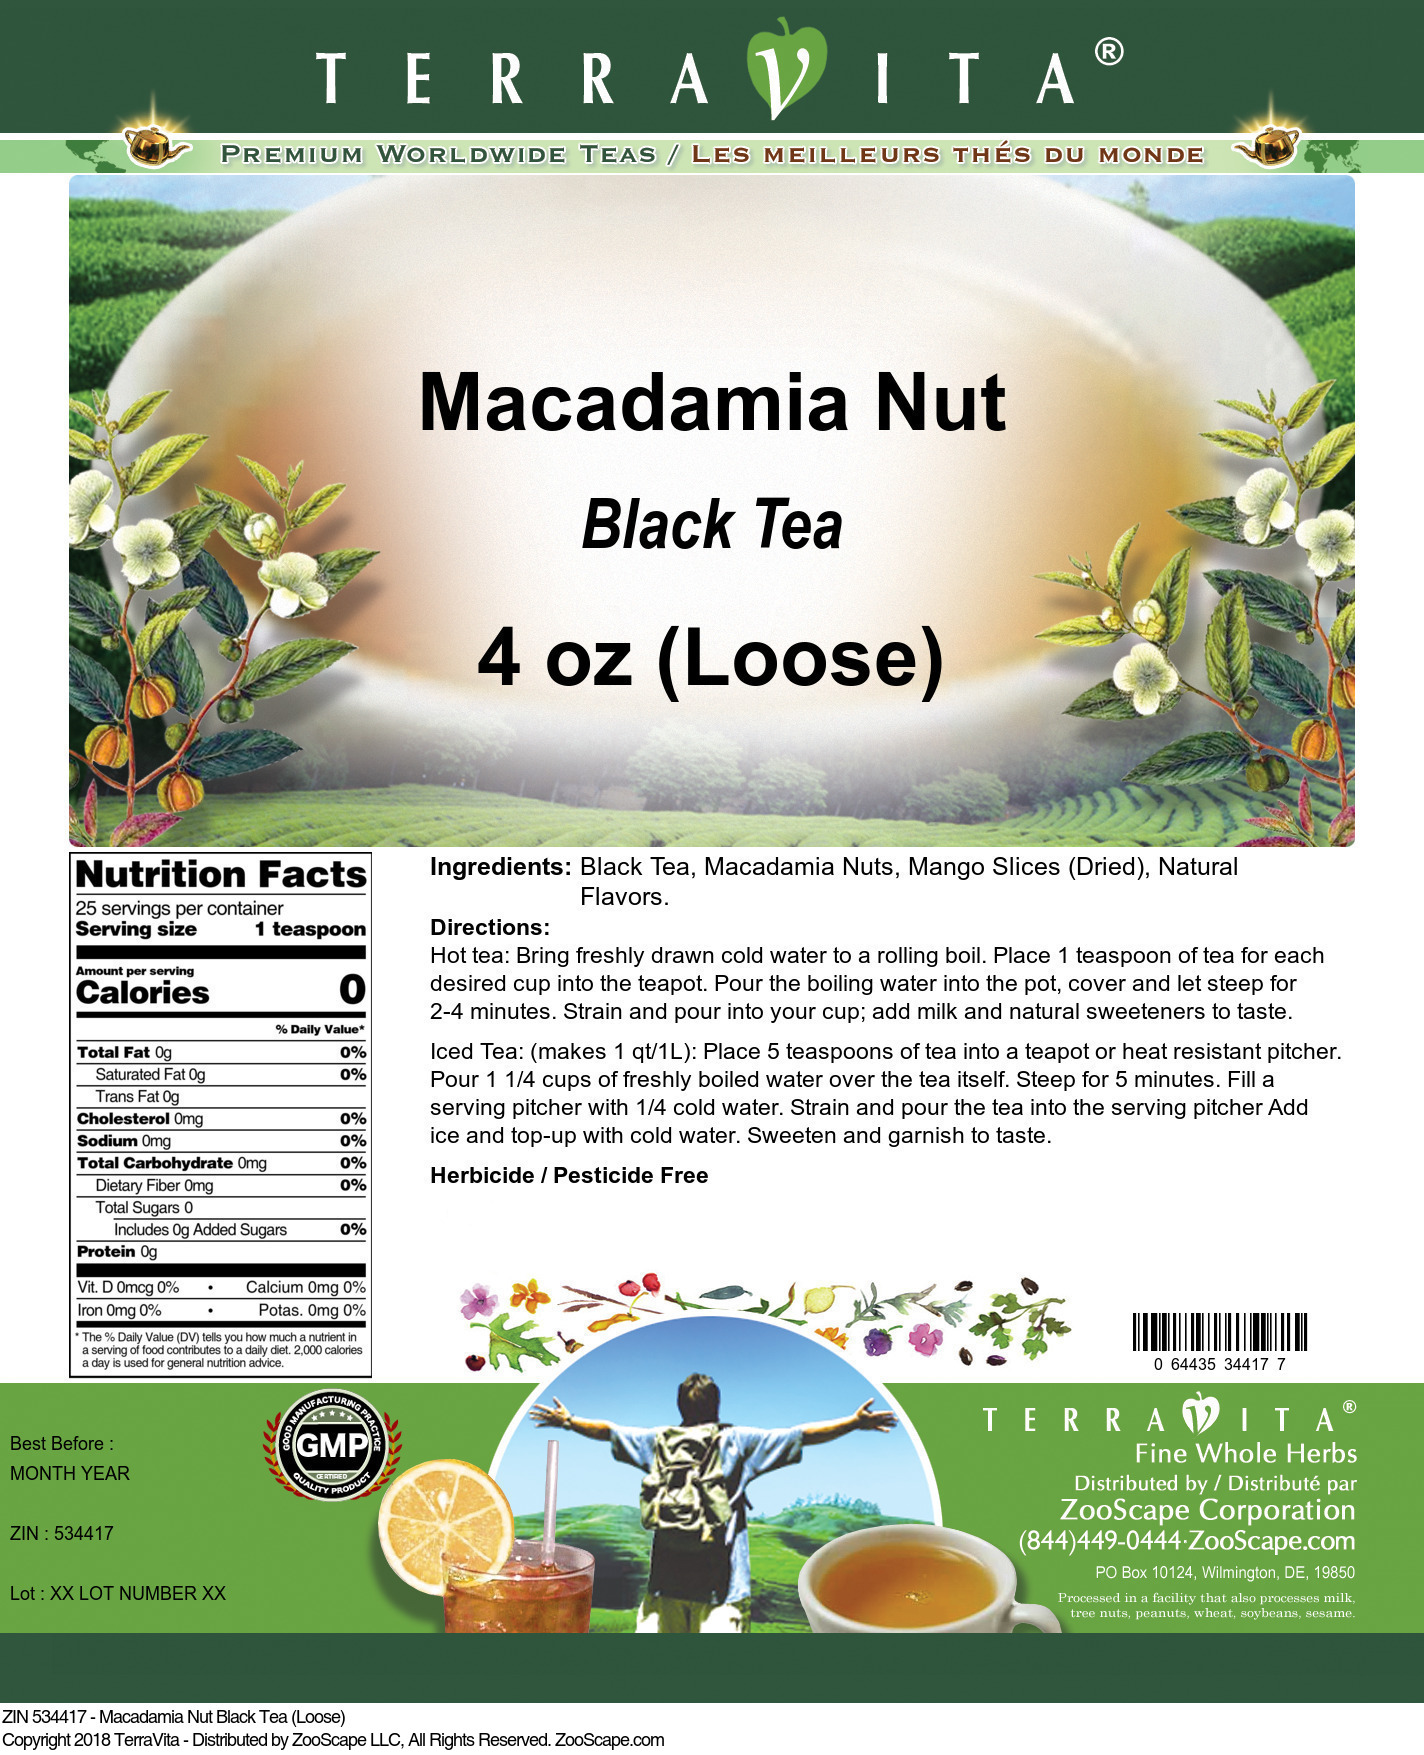 Macadamia Nut Black Tea (Loose) - Label